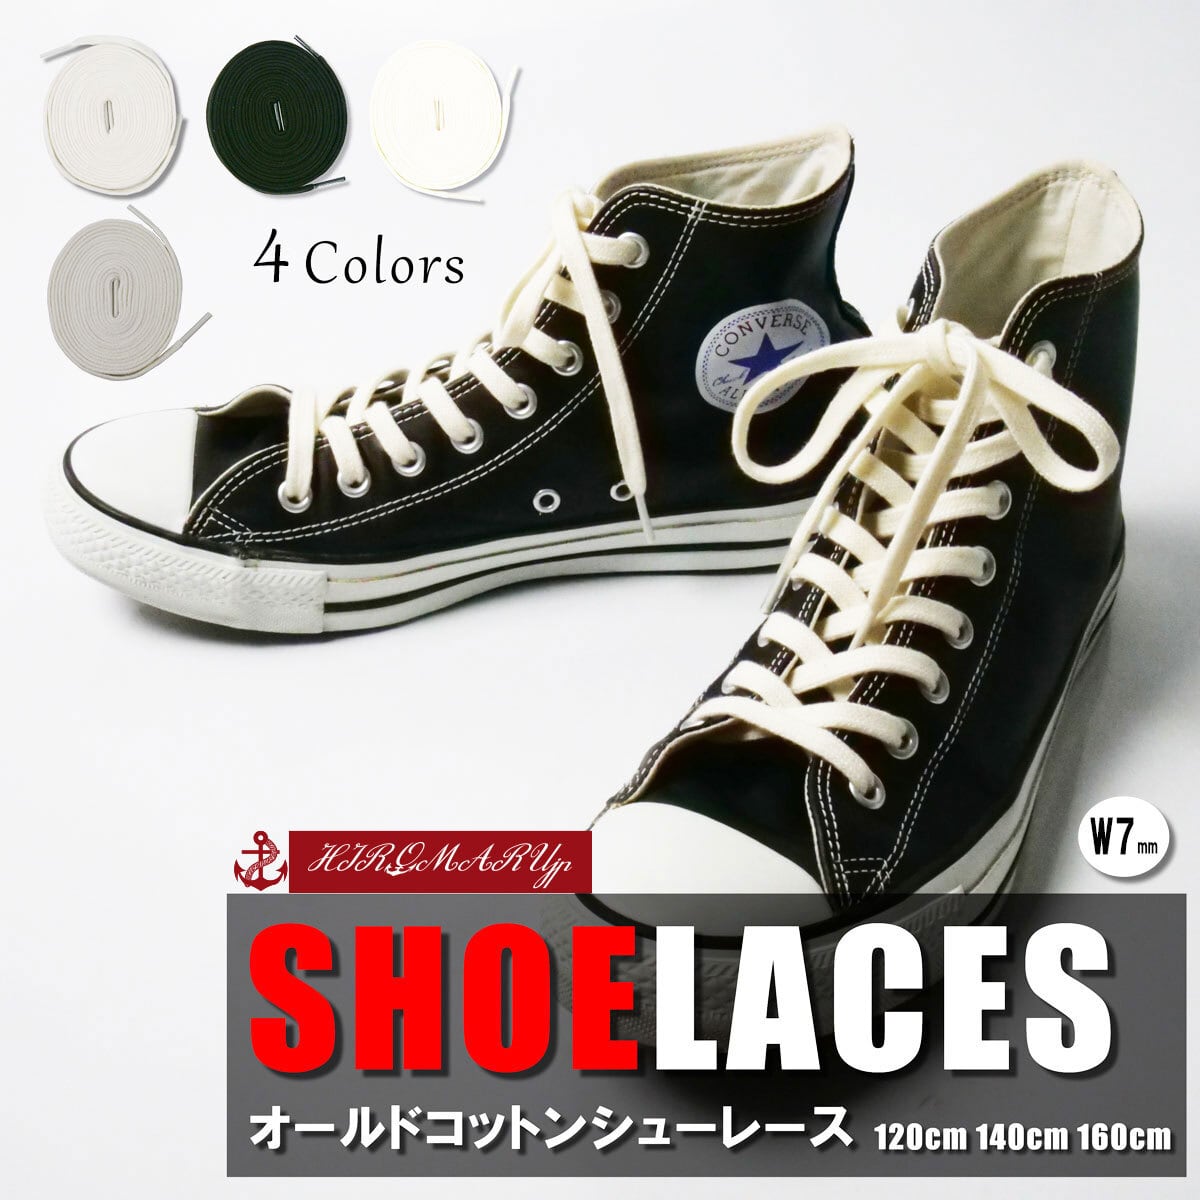 ホワイト ブラック140cm シューレース Shoelaces ロゴ スニーカー